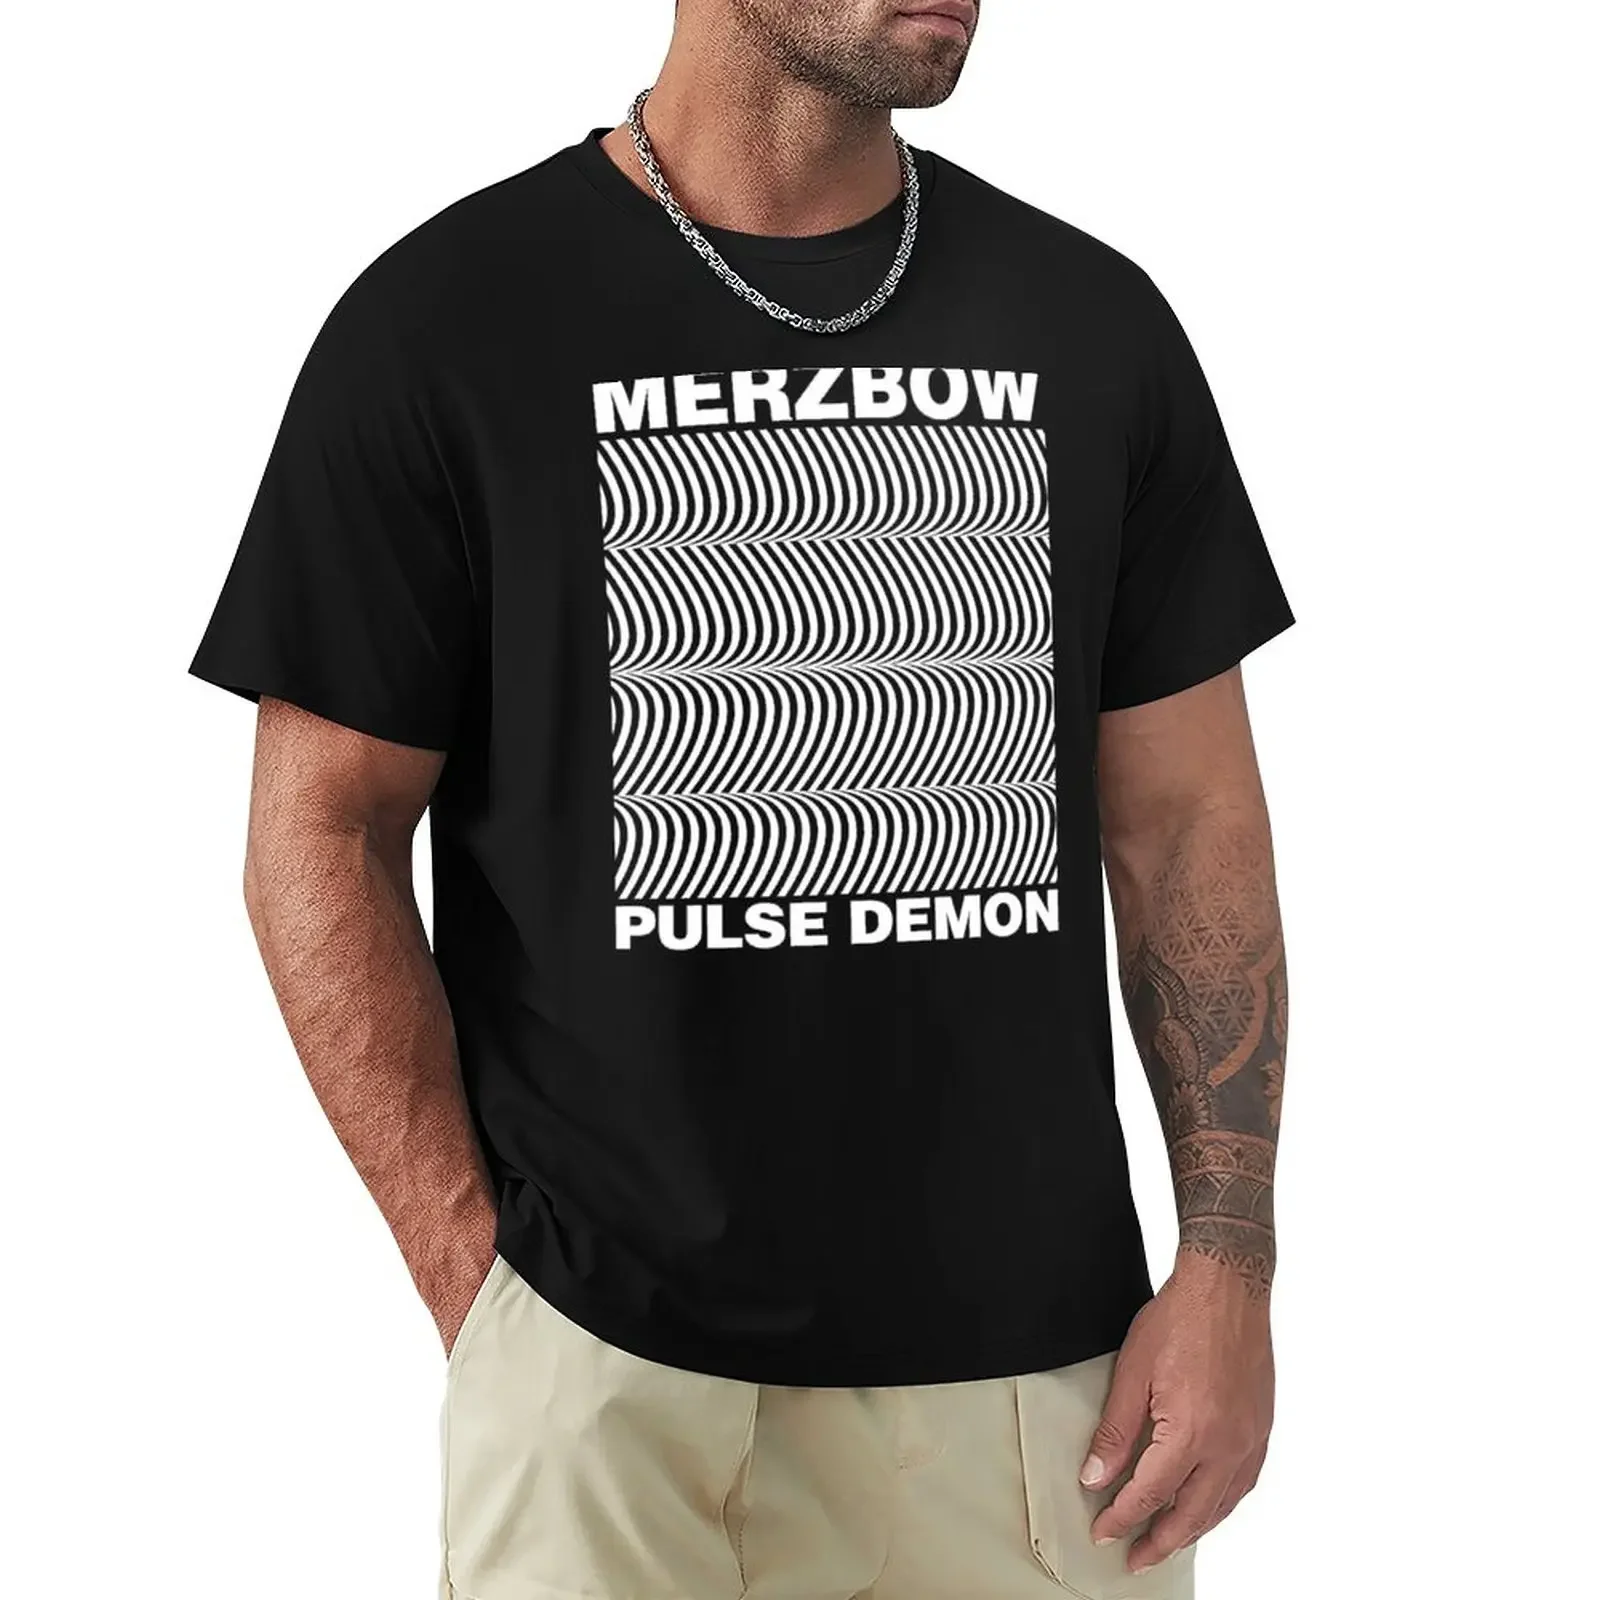 

Merzbow Pulse футболка Demon спортивные футболки для фанатов, графические футболки, большие и высокие футболки для мужчин